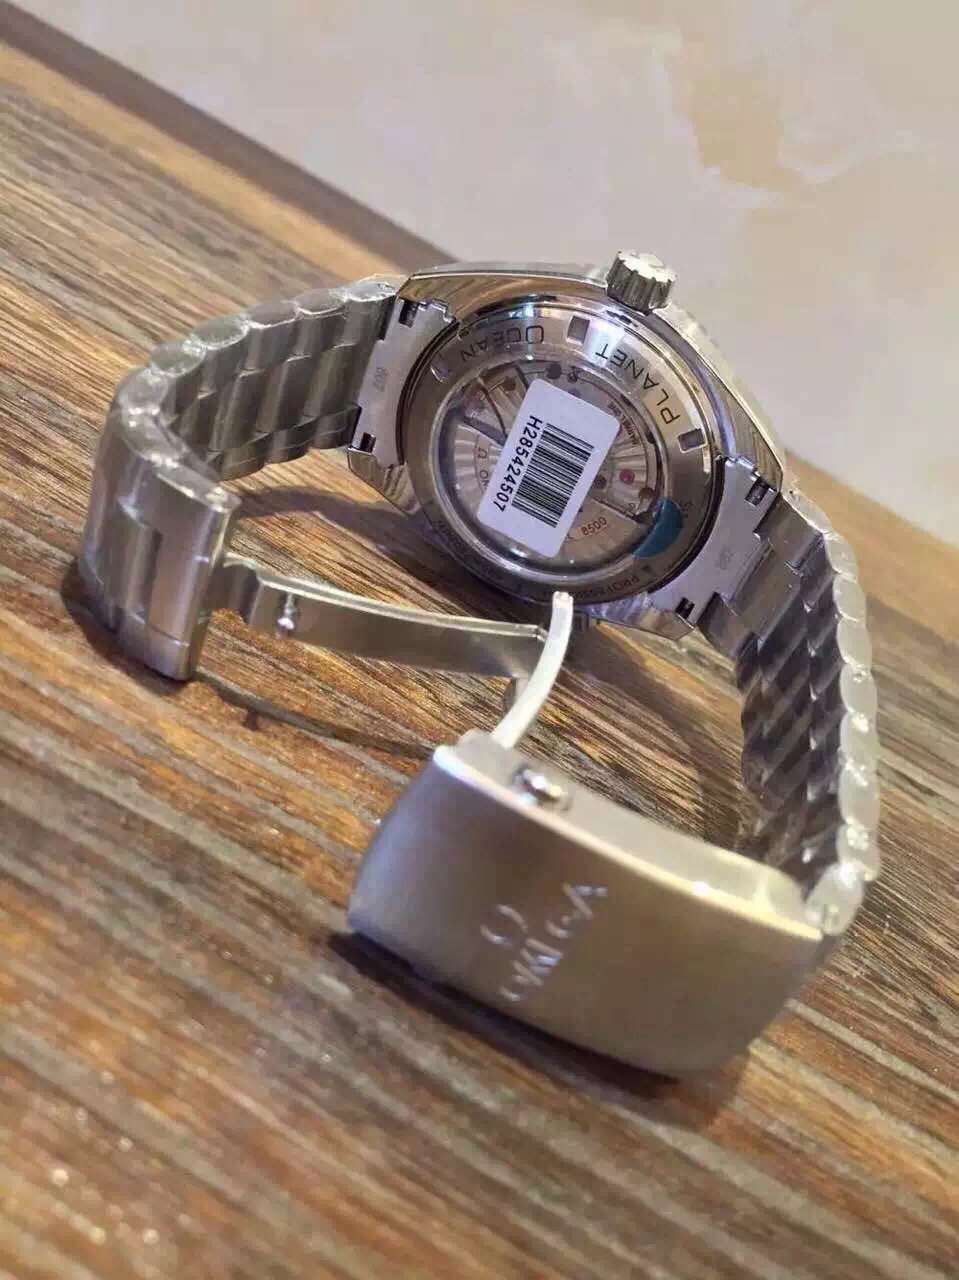 2023102323325864 - 哪裏買高仿手錶歐米茄海馬 XF歐米茄海馬海洋宇宙計時2201.50.00￥3680